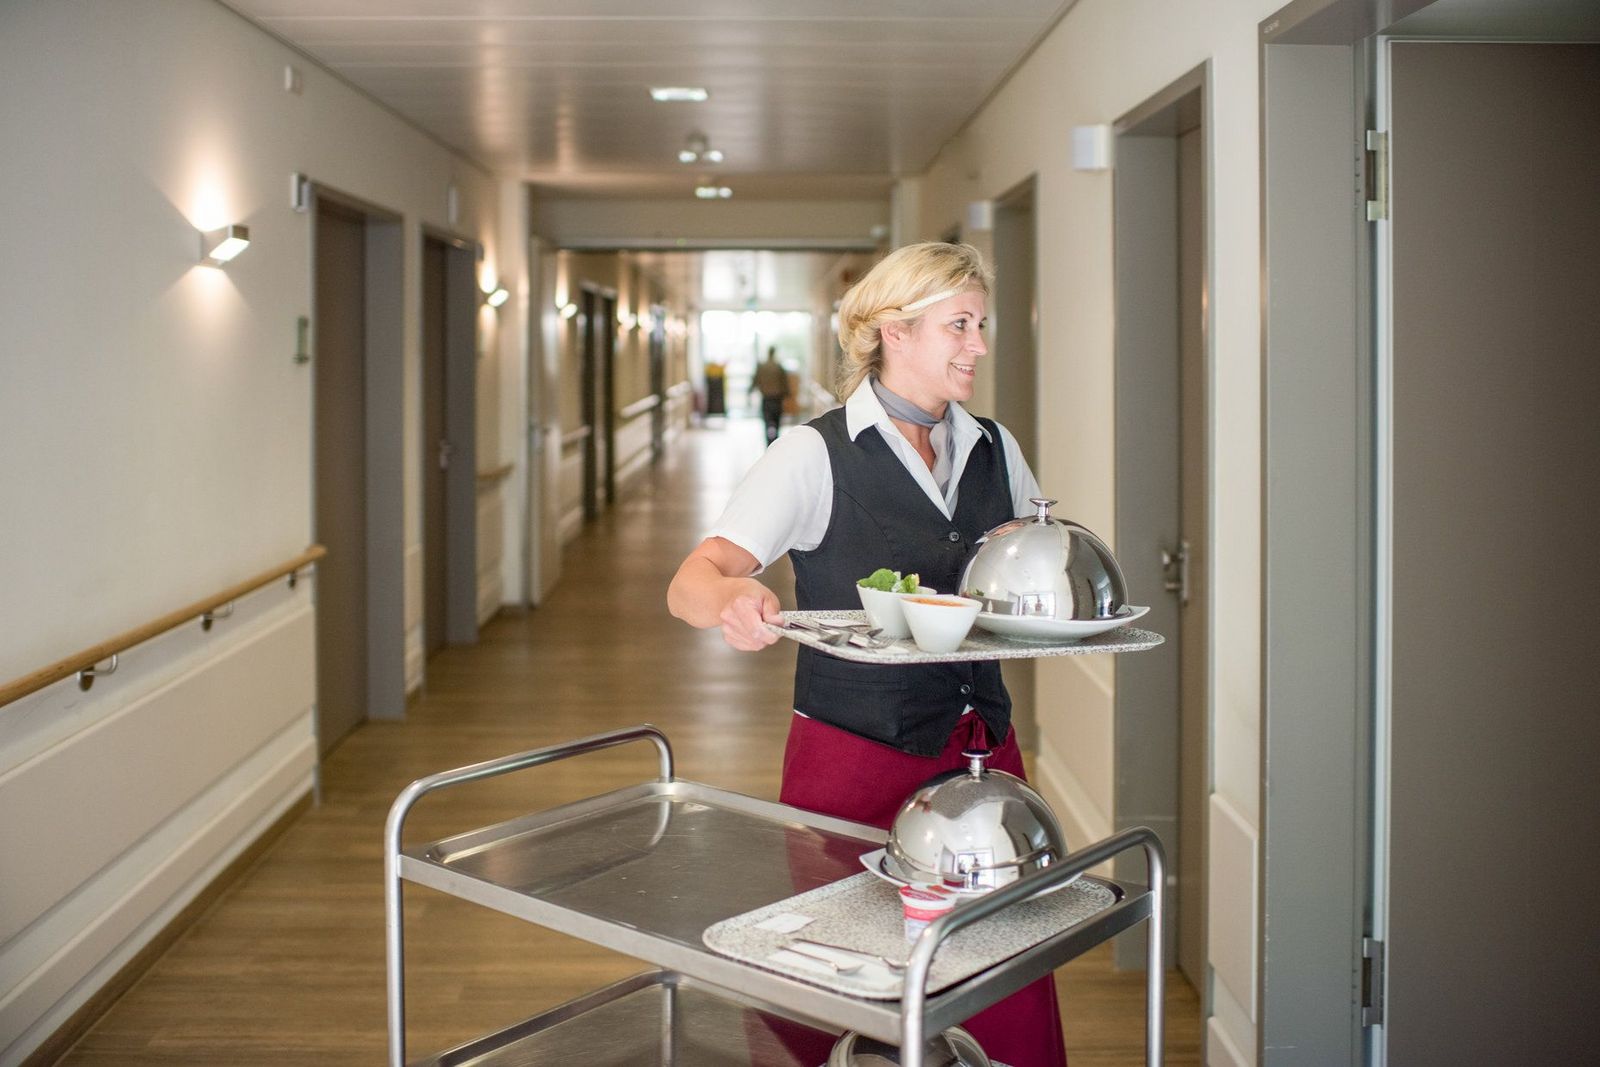 Adrett gekleidete Serviceassistentin bringt Speisen auf einem Tablett ins Patientenzimmer